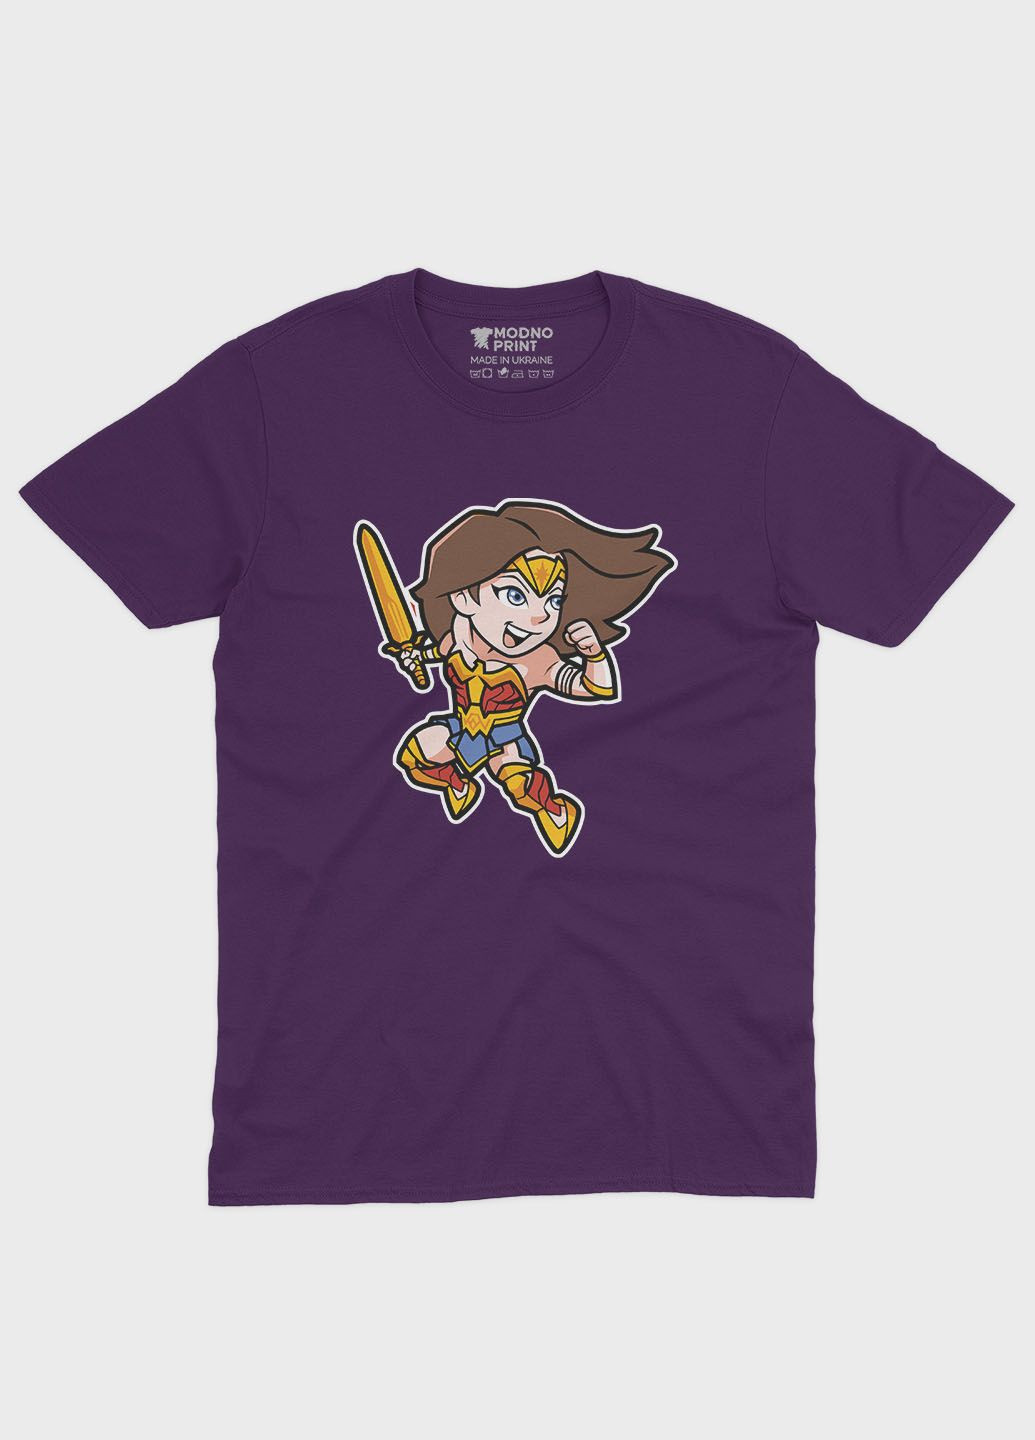 Фіолетова демісезонна футболка для хлопчика з принтом супергероя - диво-жінка (ts001-1-dby-006-006-001-b) Modno